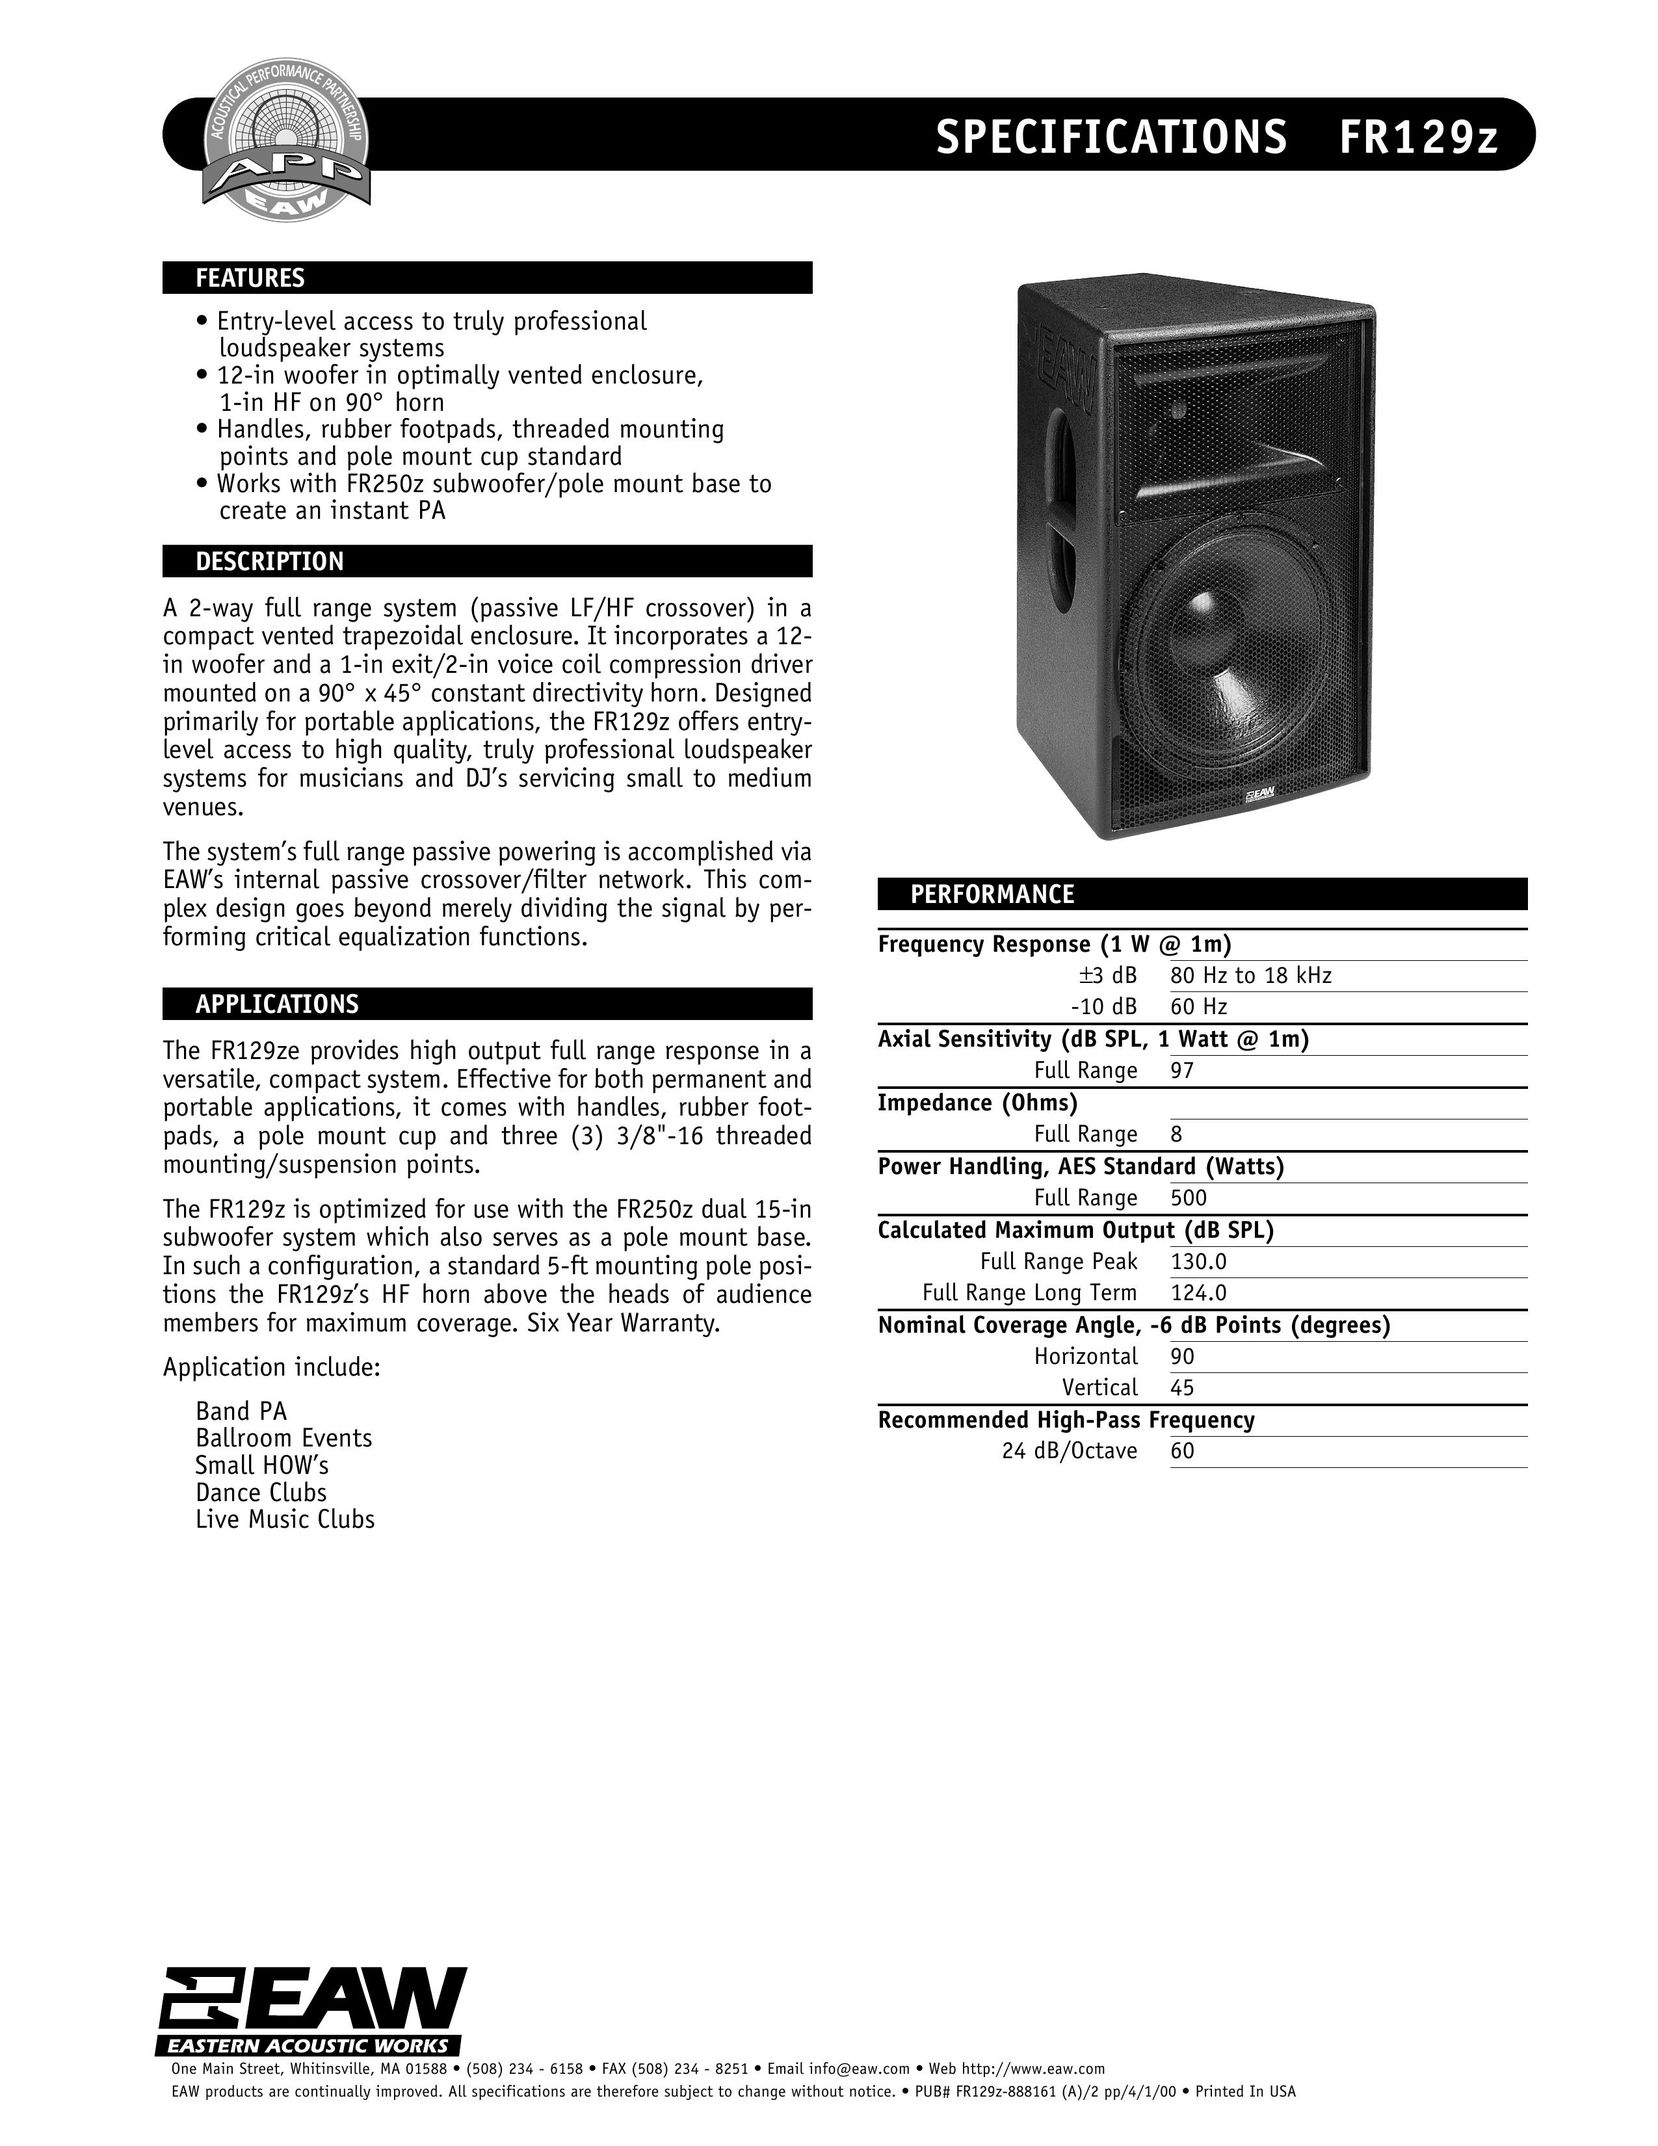 EAW FR129z Portable Speaker User Manual